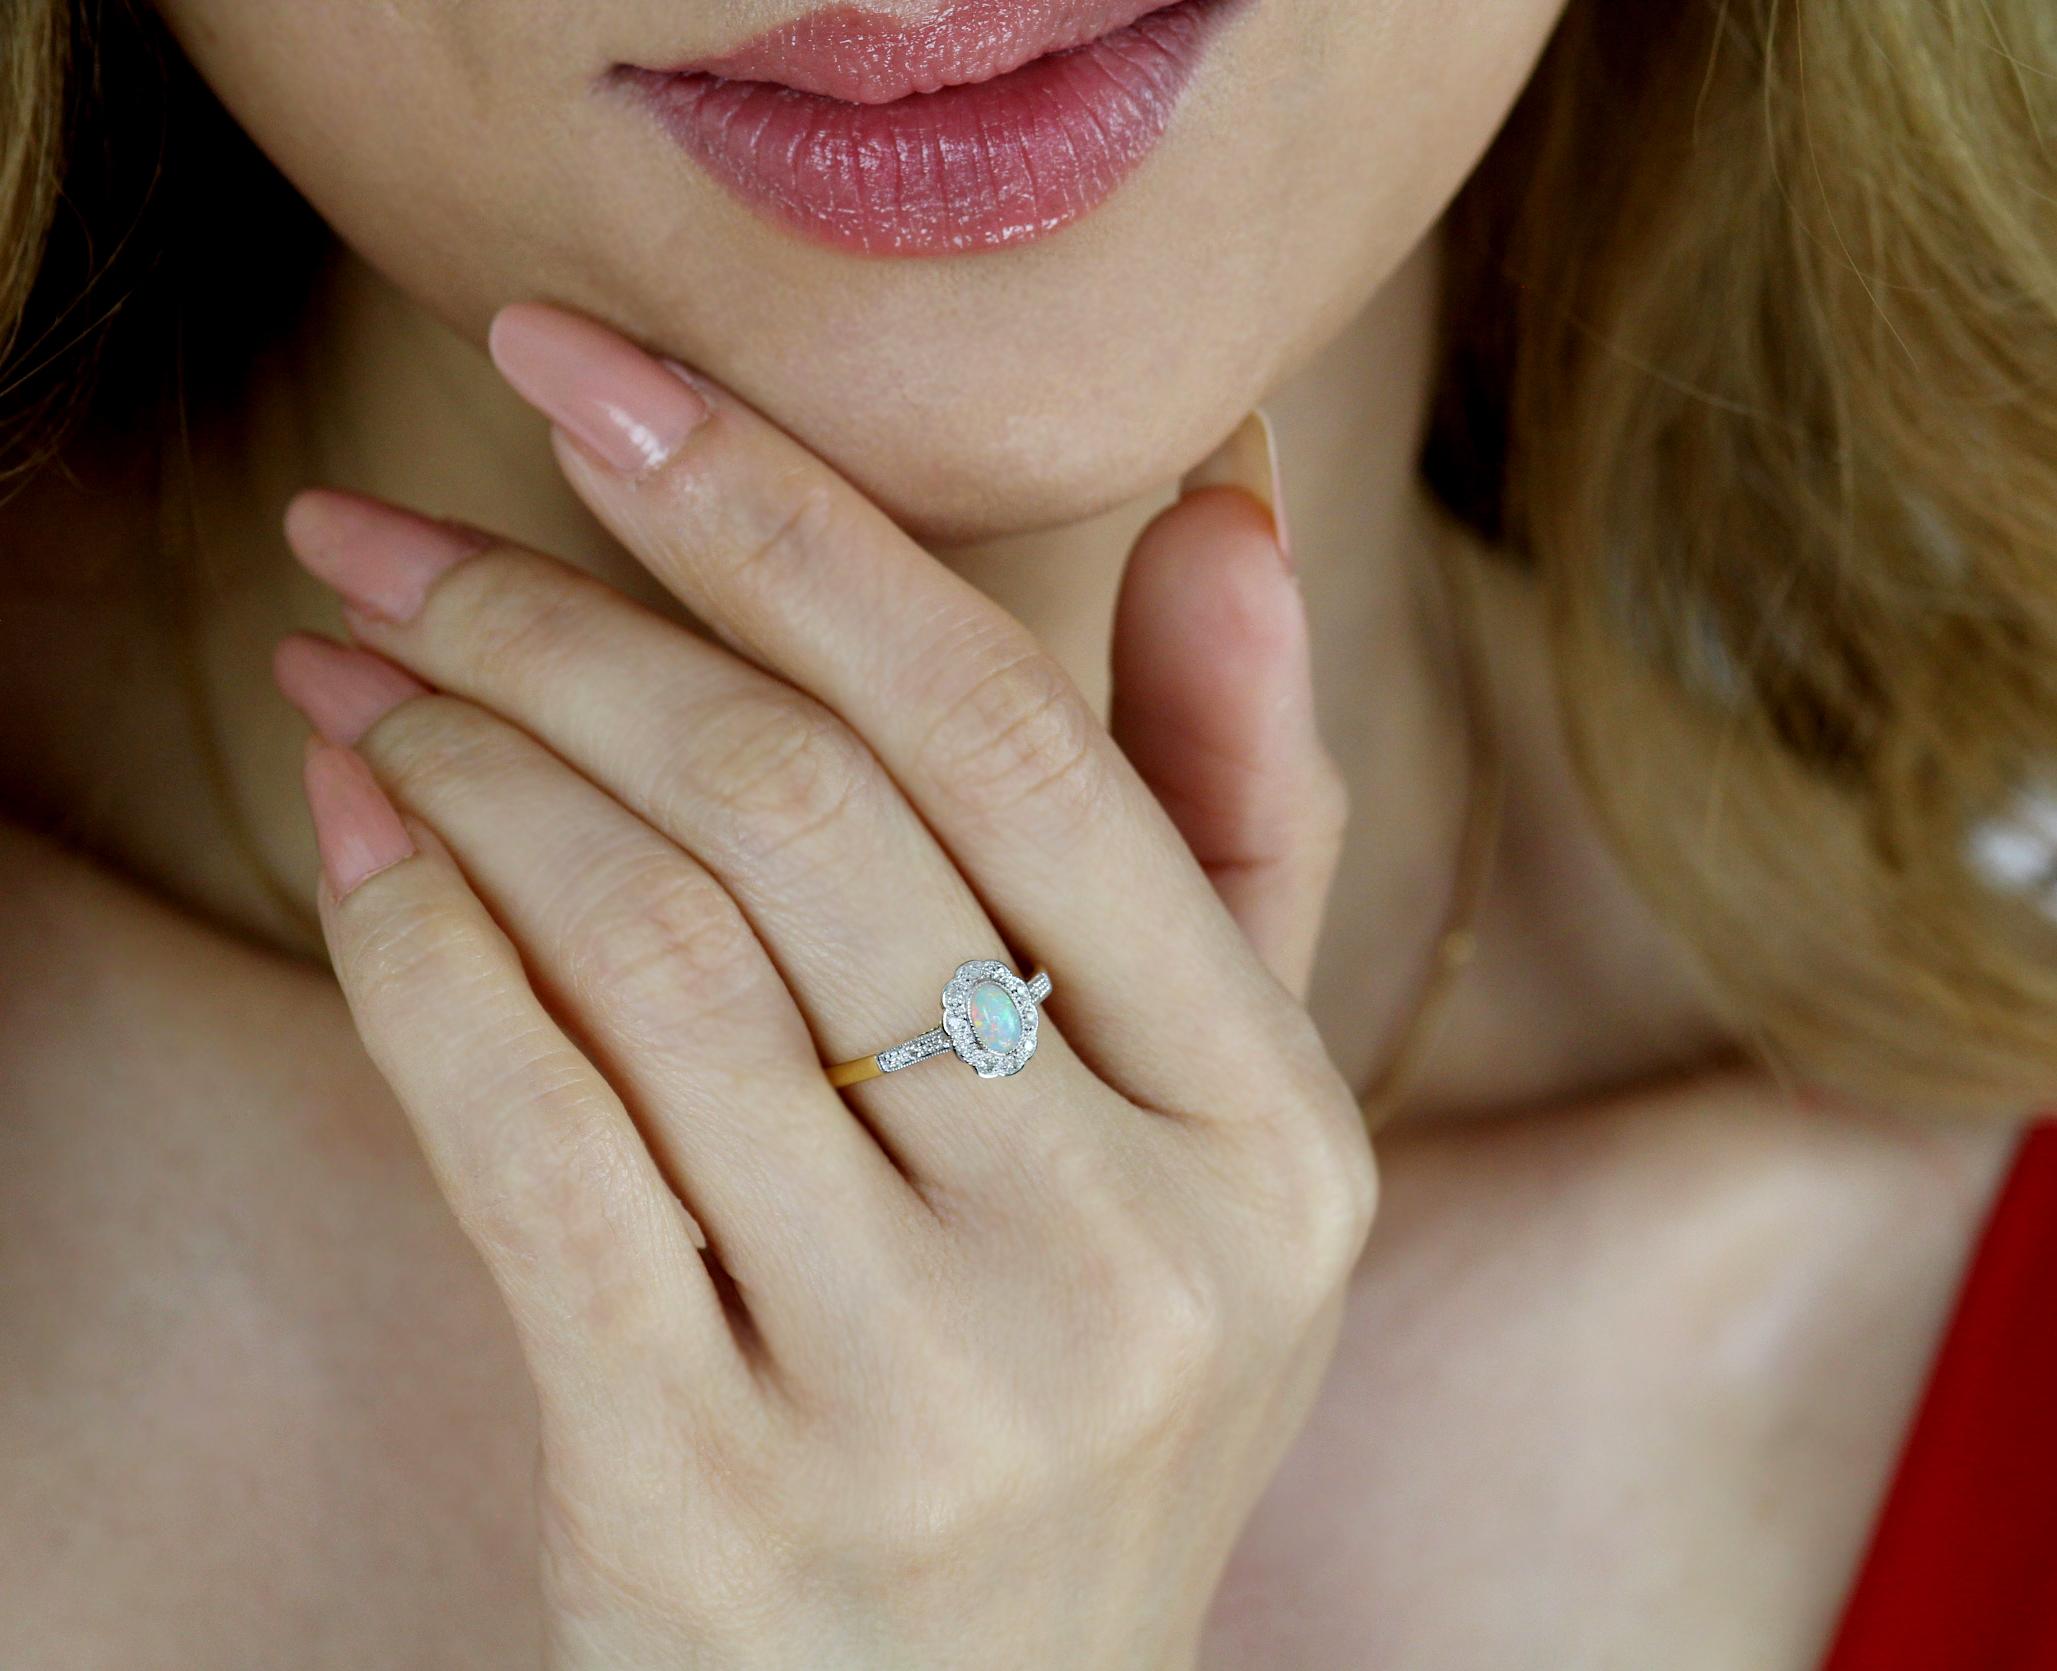 Zierlicher Ring aus 18-karätigem Gold und Platin mit einem ovalen weißen Opal in der Mitte, umgeben von 0,35-karätigen runden Diamanten im Einzelschliff mit Millgraining an den Rändern der Fassung.

12 Diamanten im Einzelschliff, ungefähres